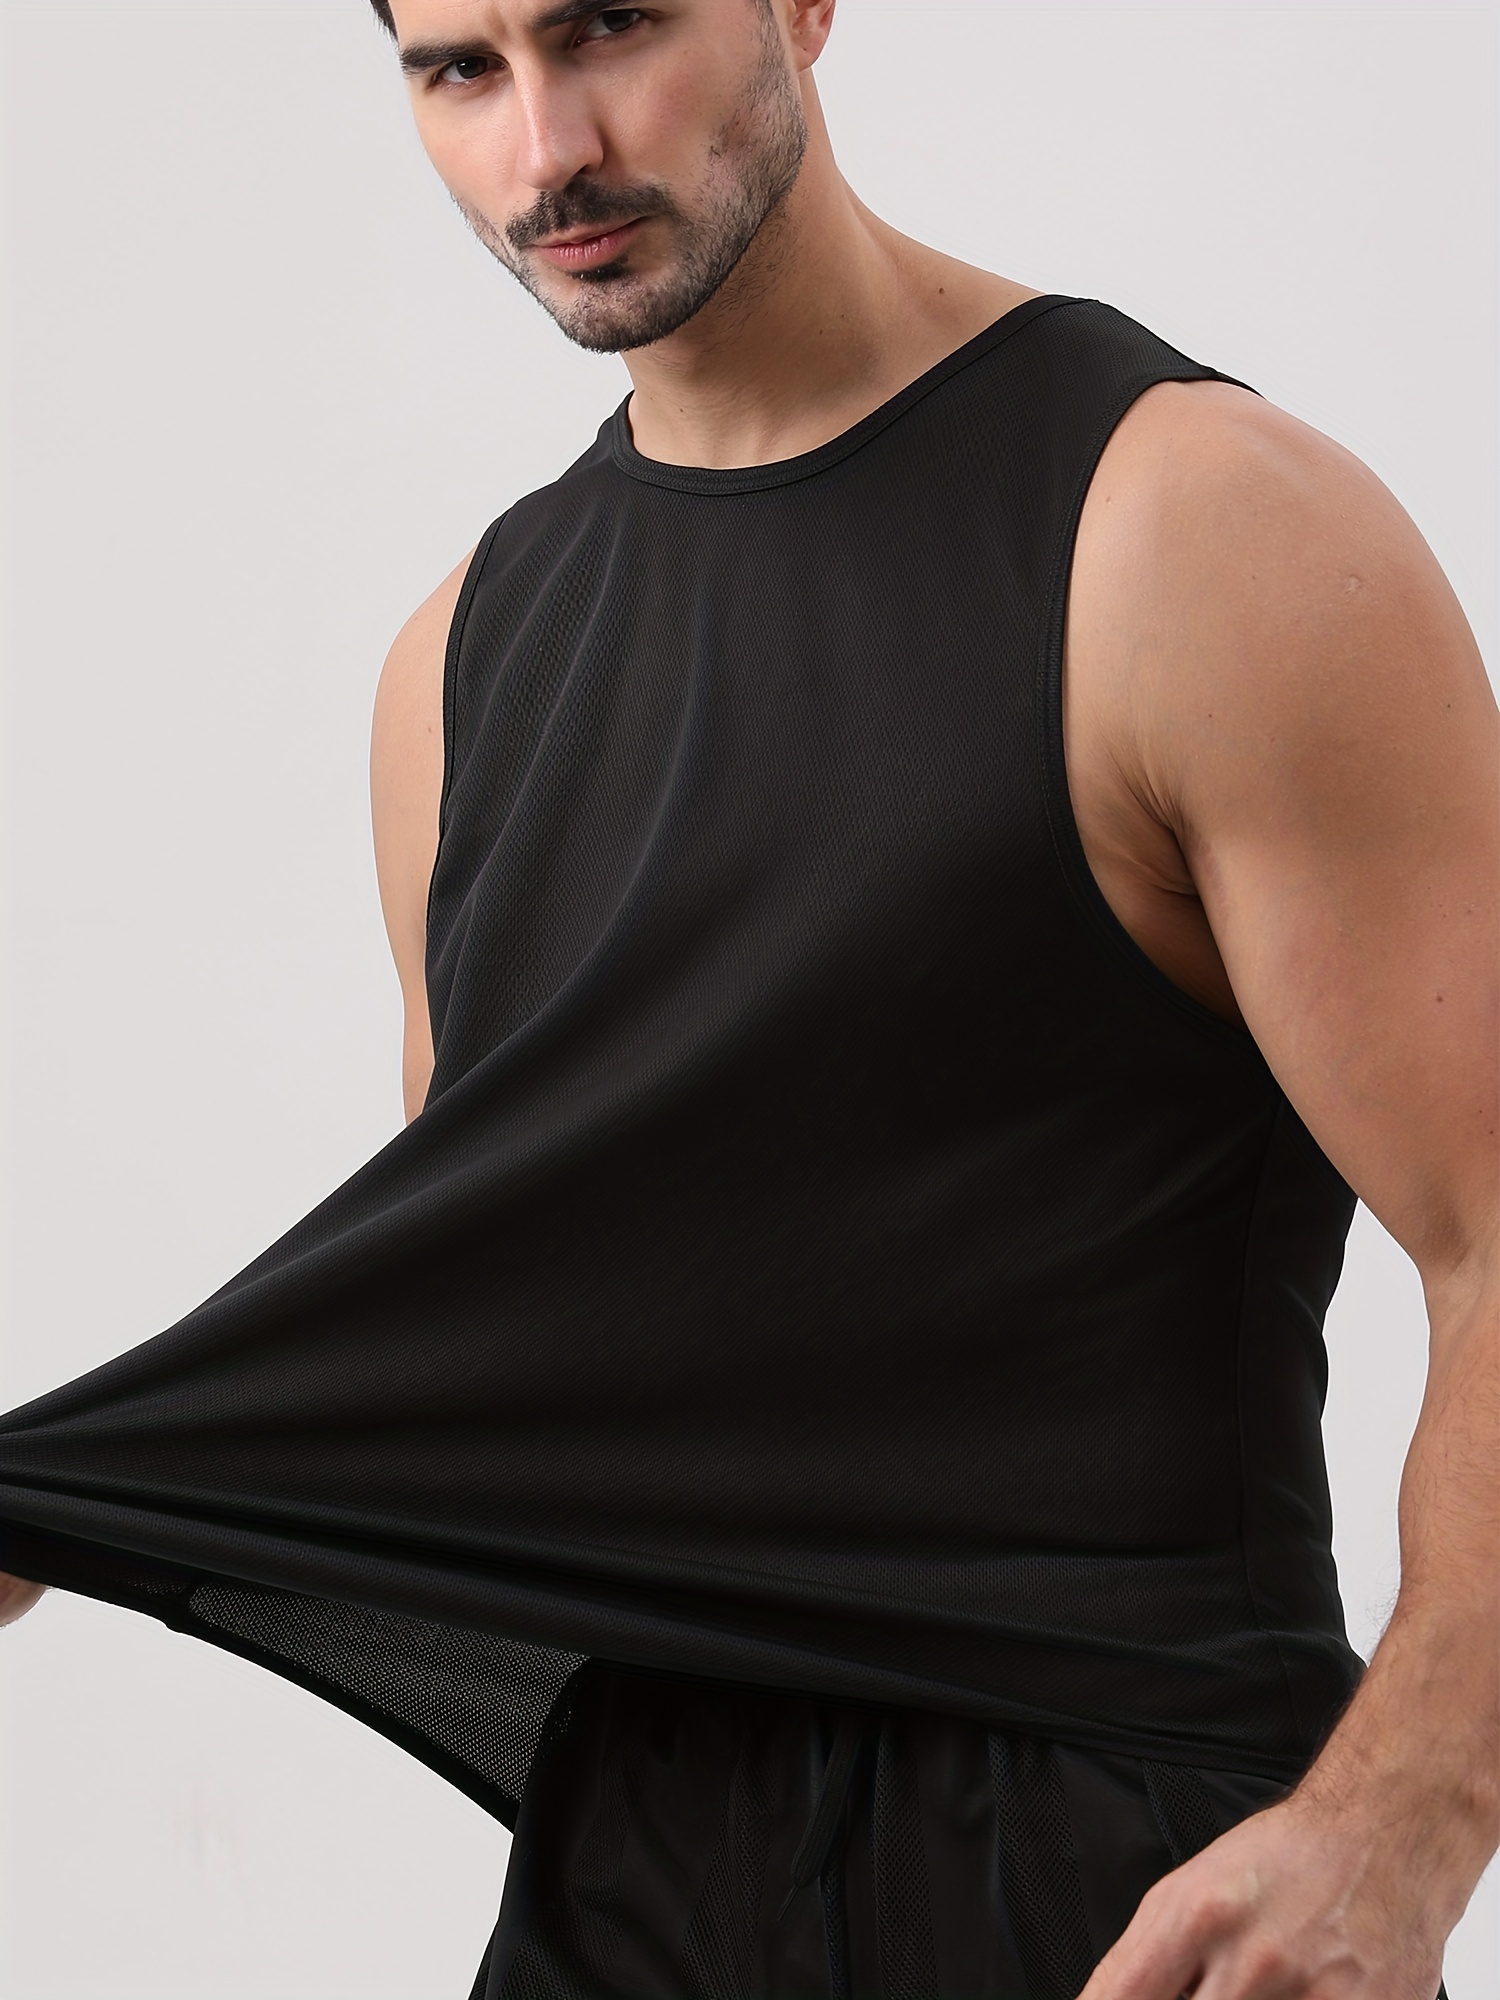 Men Summer Plain Gym Muscle Tank Top Quick Dry Sleeveless Running Vest  Shirt 